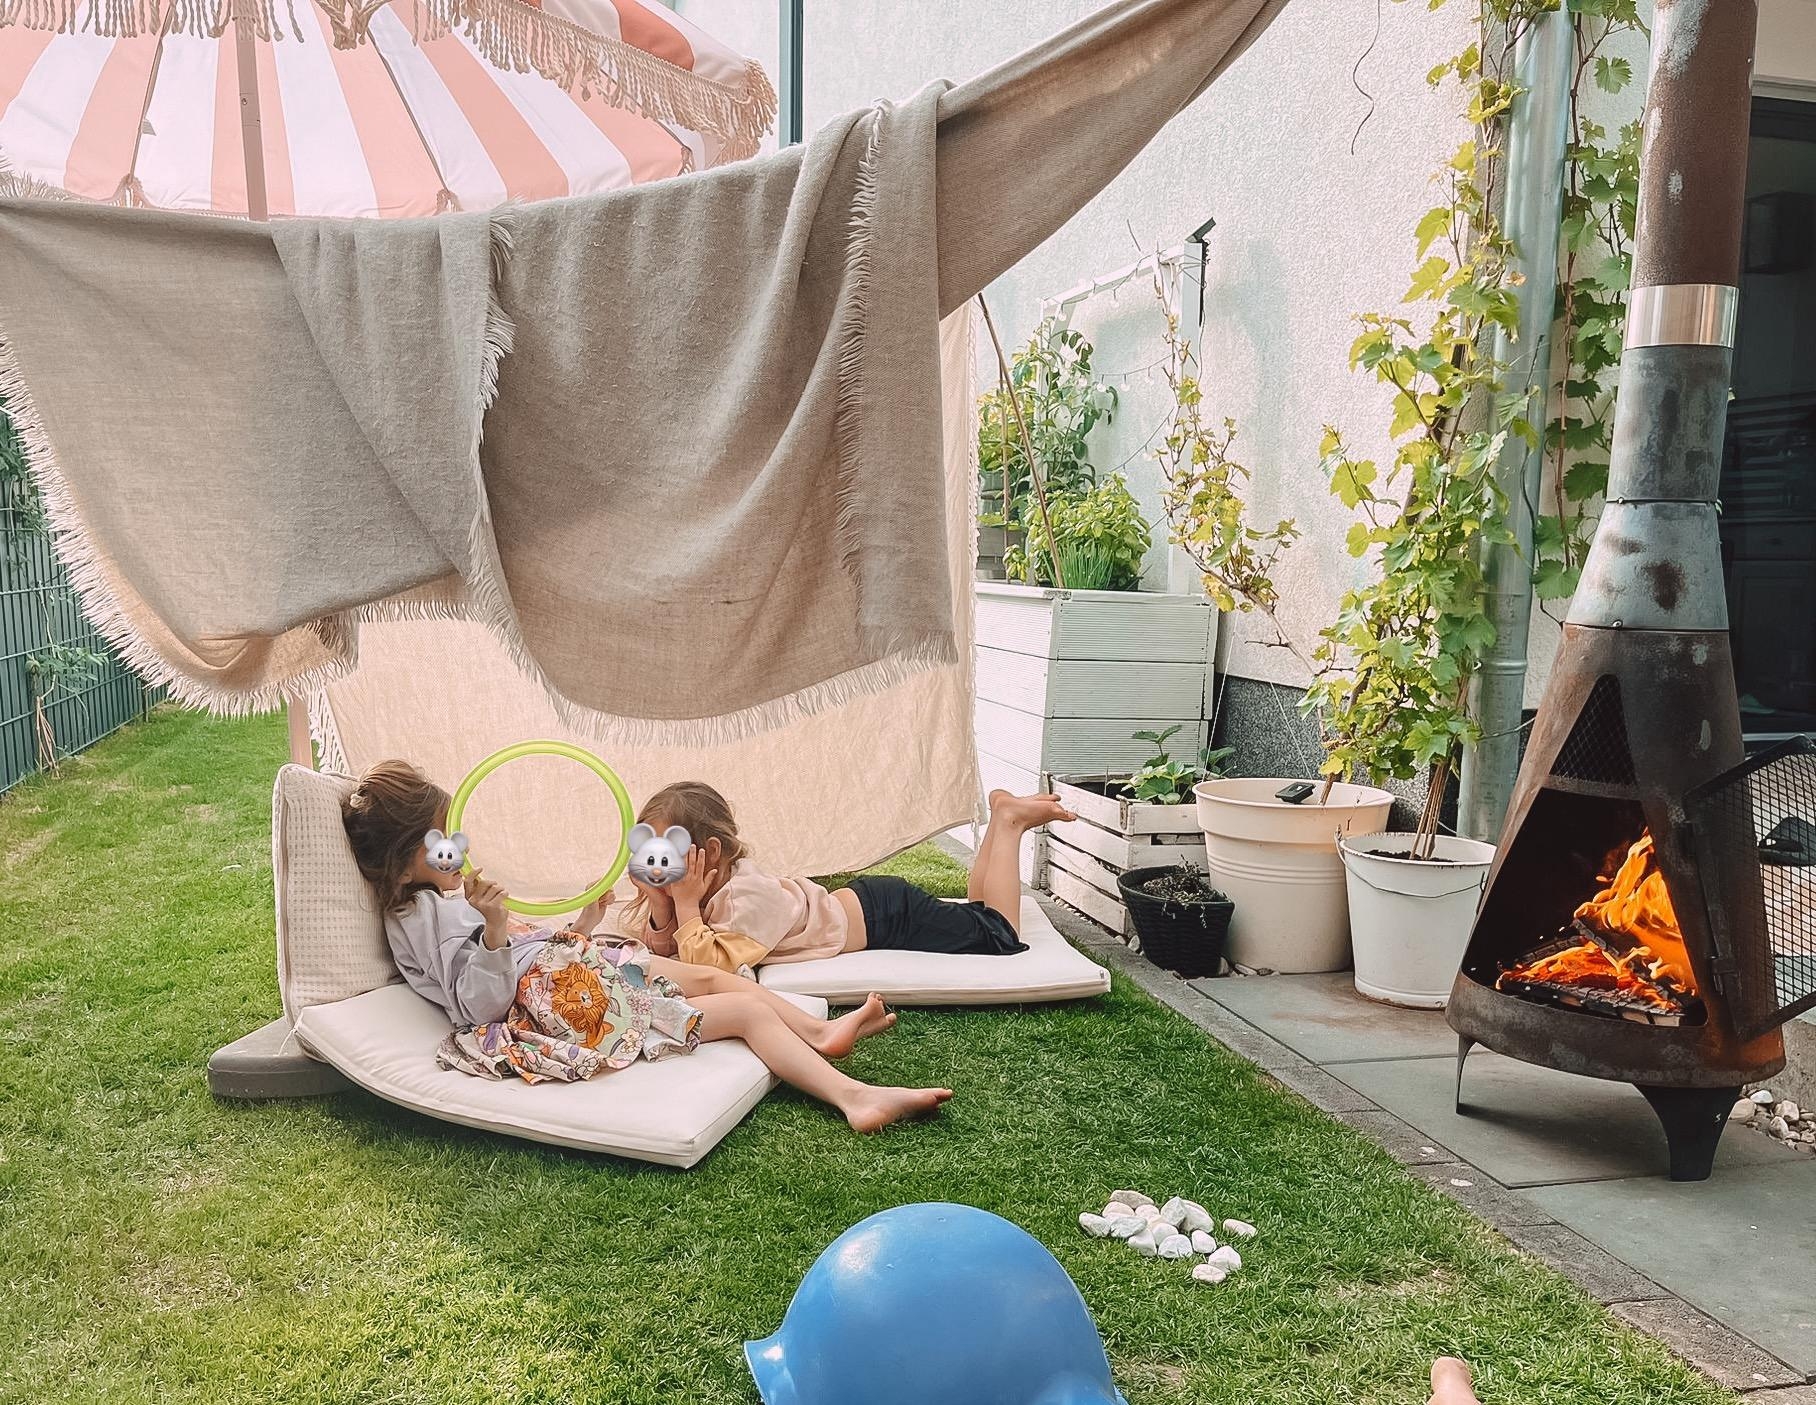 Sommerfeeling = Selbstgebaute Zelte, Abendfeuer und Marshmallows 🔥⛺️☀️#kleinaberfein #gartenliebe #gartenmitkindern #outdoorkamin #abendsonne #maximumentspannung #hochbe